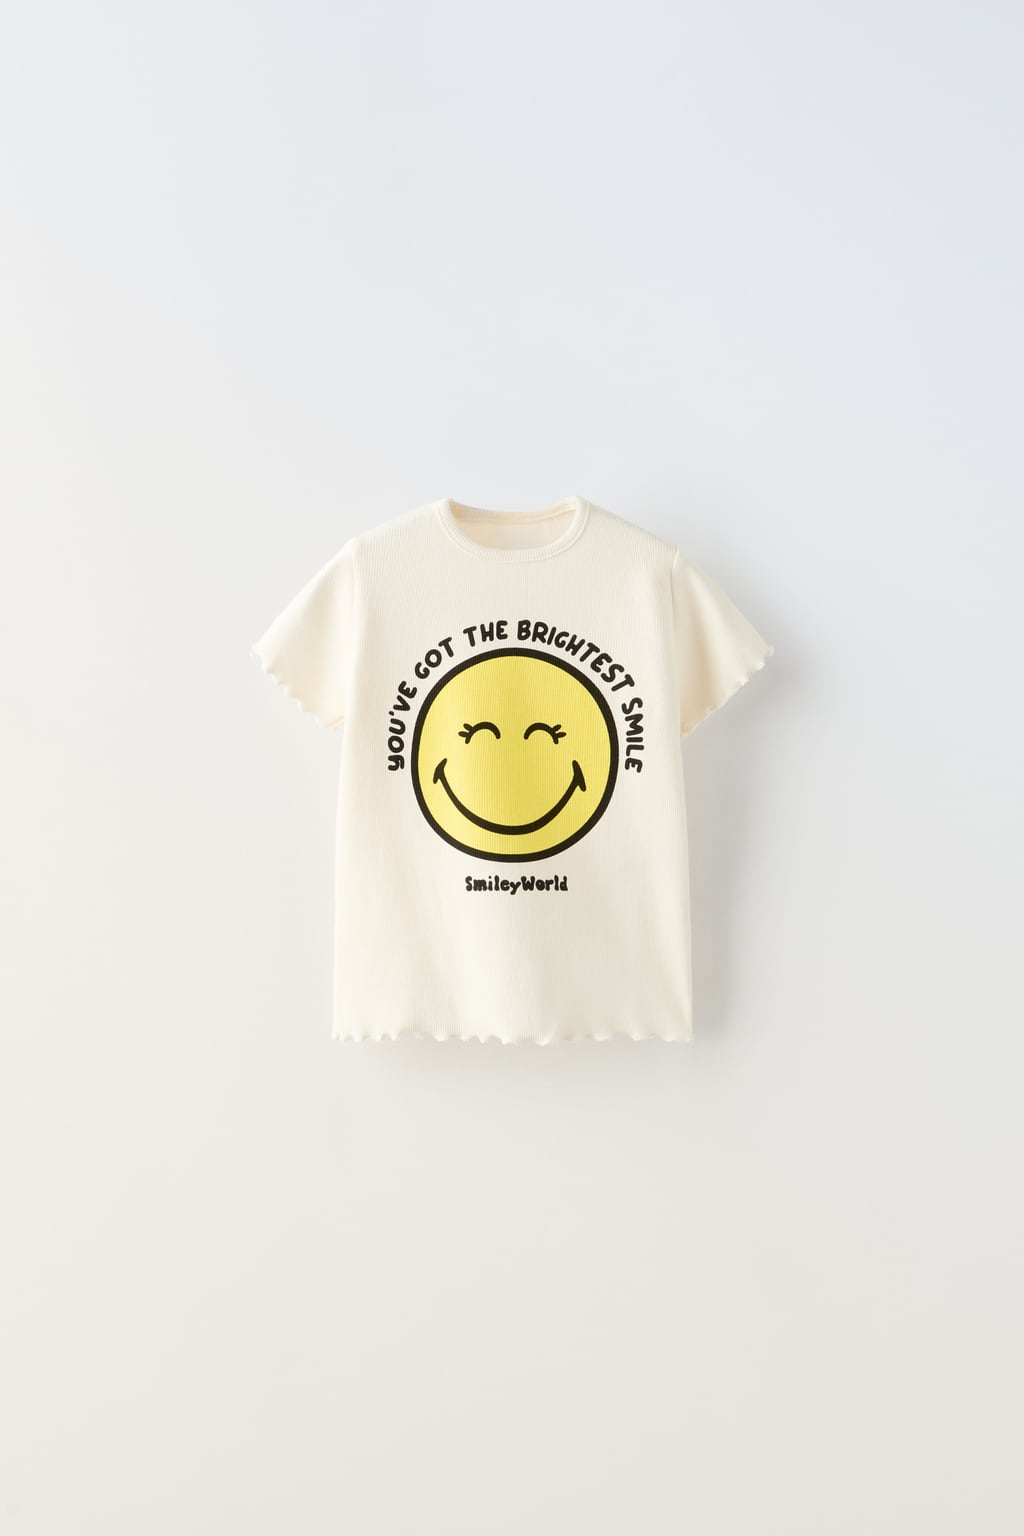 Футболка smileyworld happy collection в ребрику ZARA, экрю футболка в ребрику с бантами zara экрю